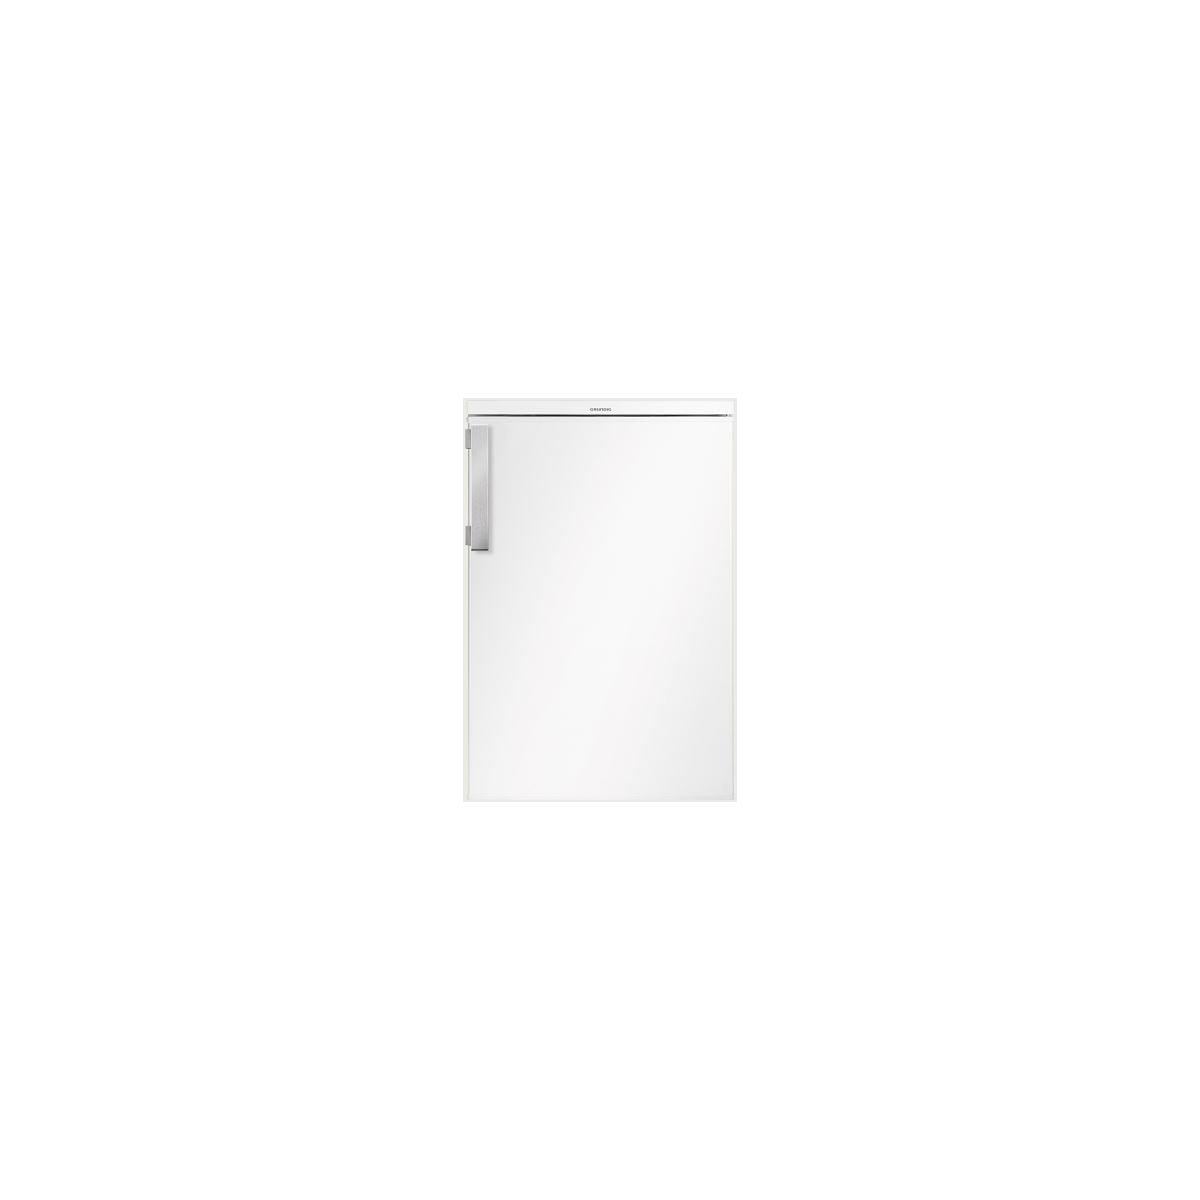 Grundig GTM14140N Standkühlschrank mit Gefrierfach, 54.5 cm breit, 114L,  LED, weiß Elektroshop Wagner